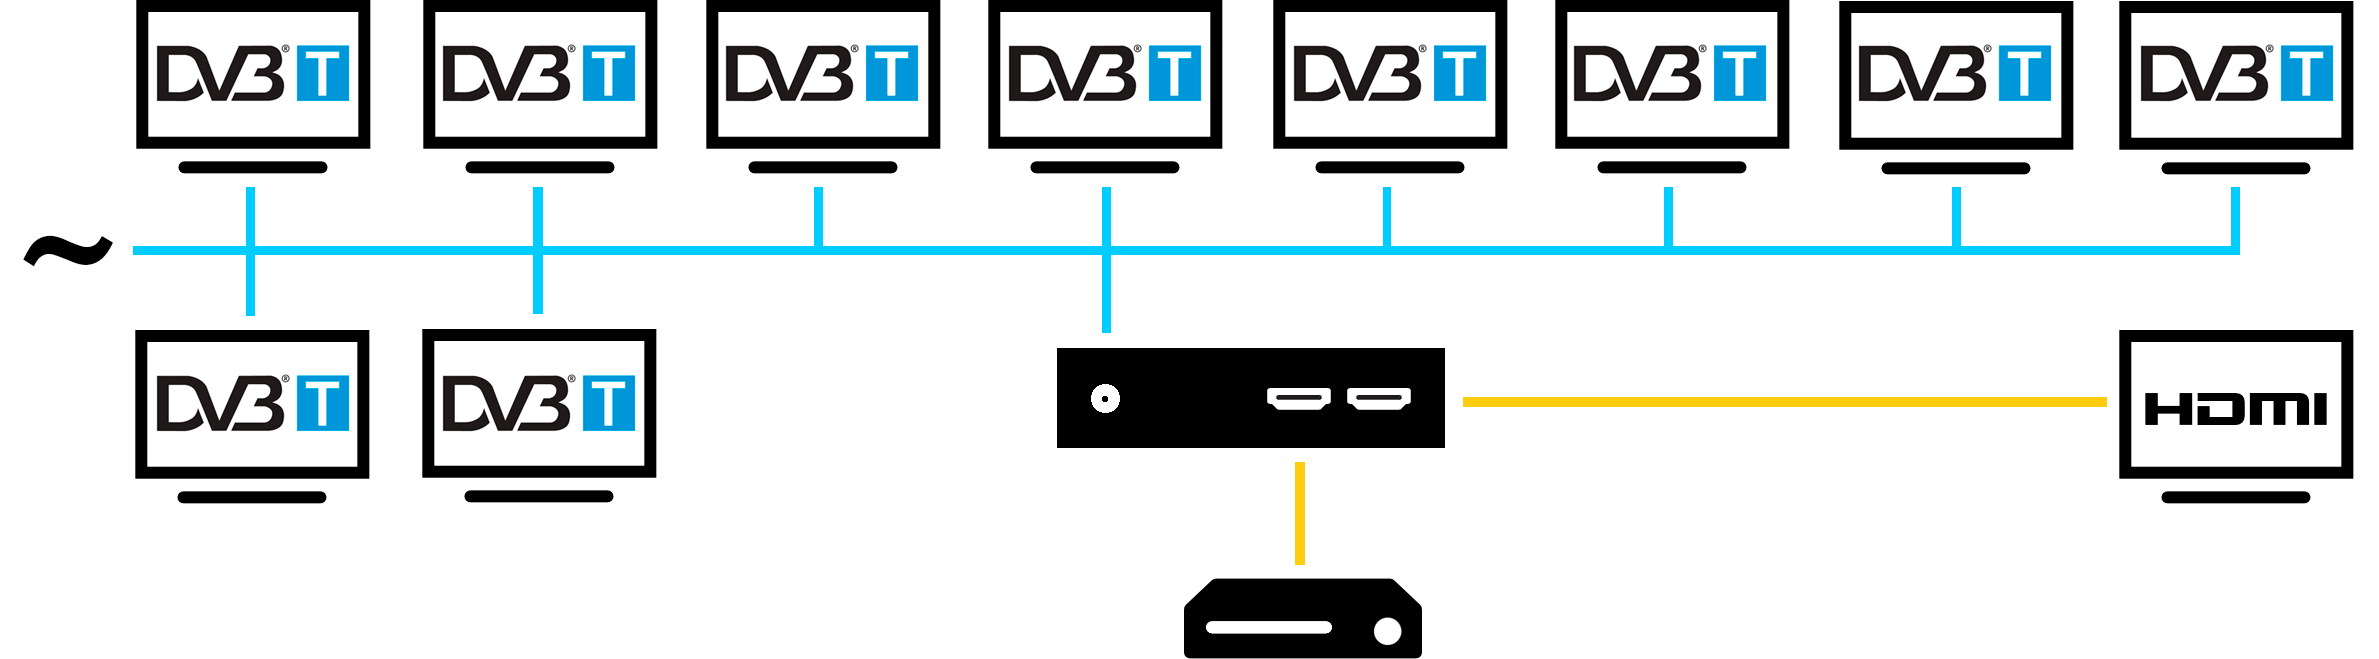 Схема работы HD DVB-T модулятора